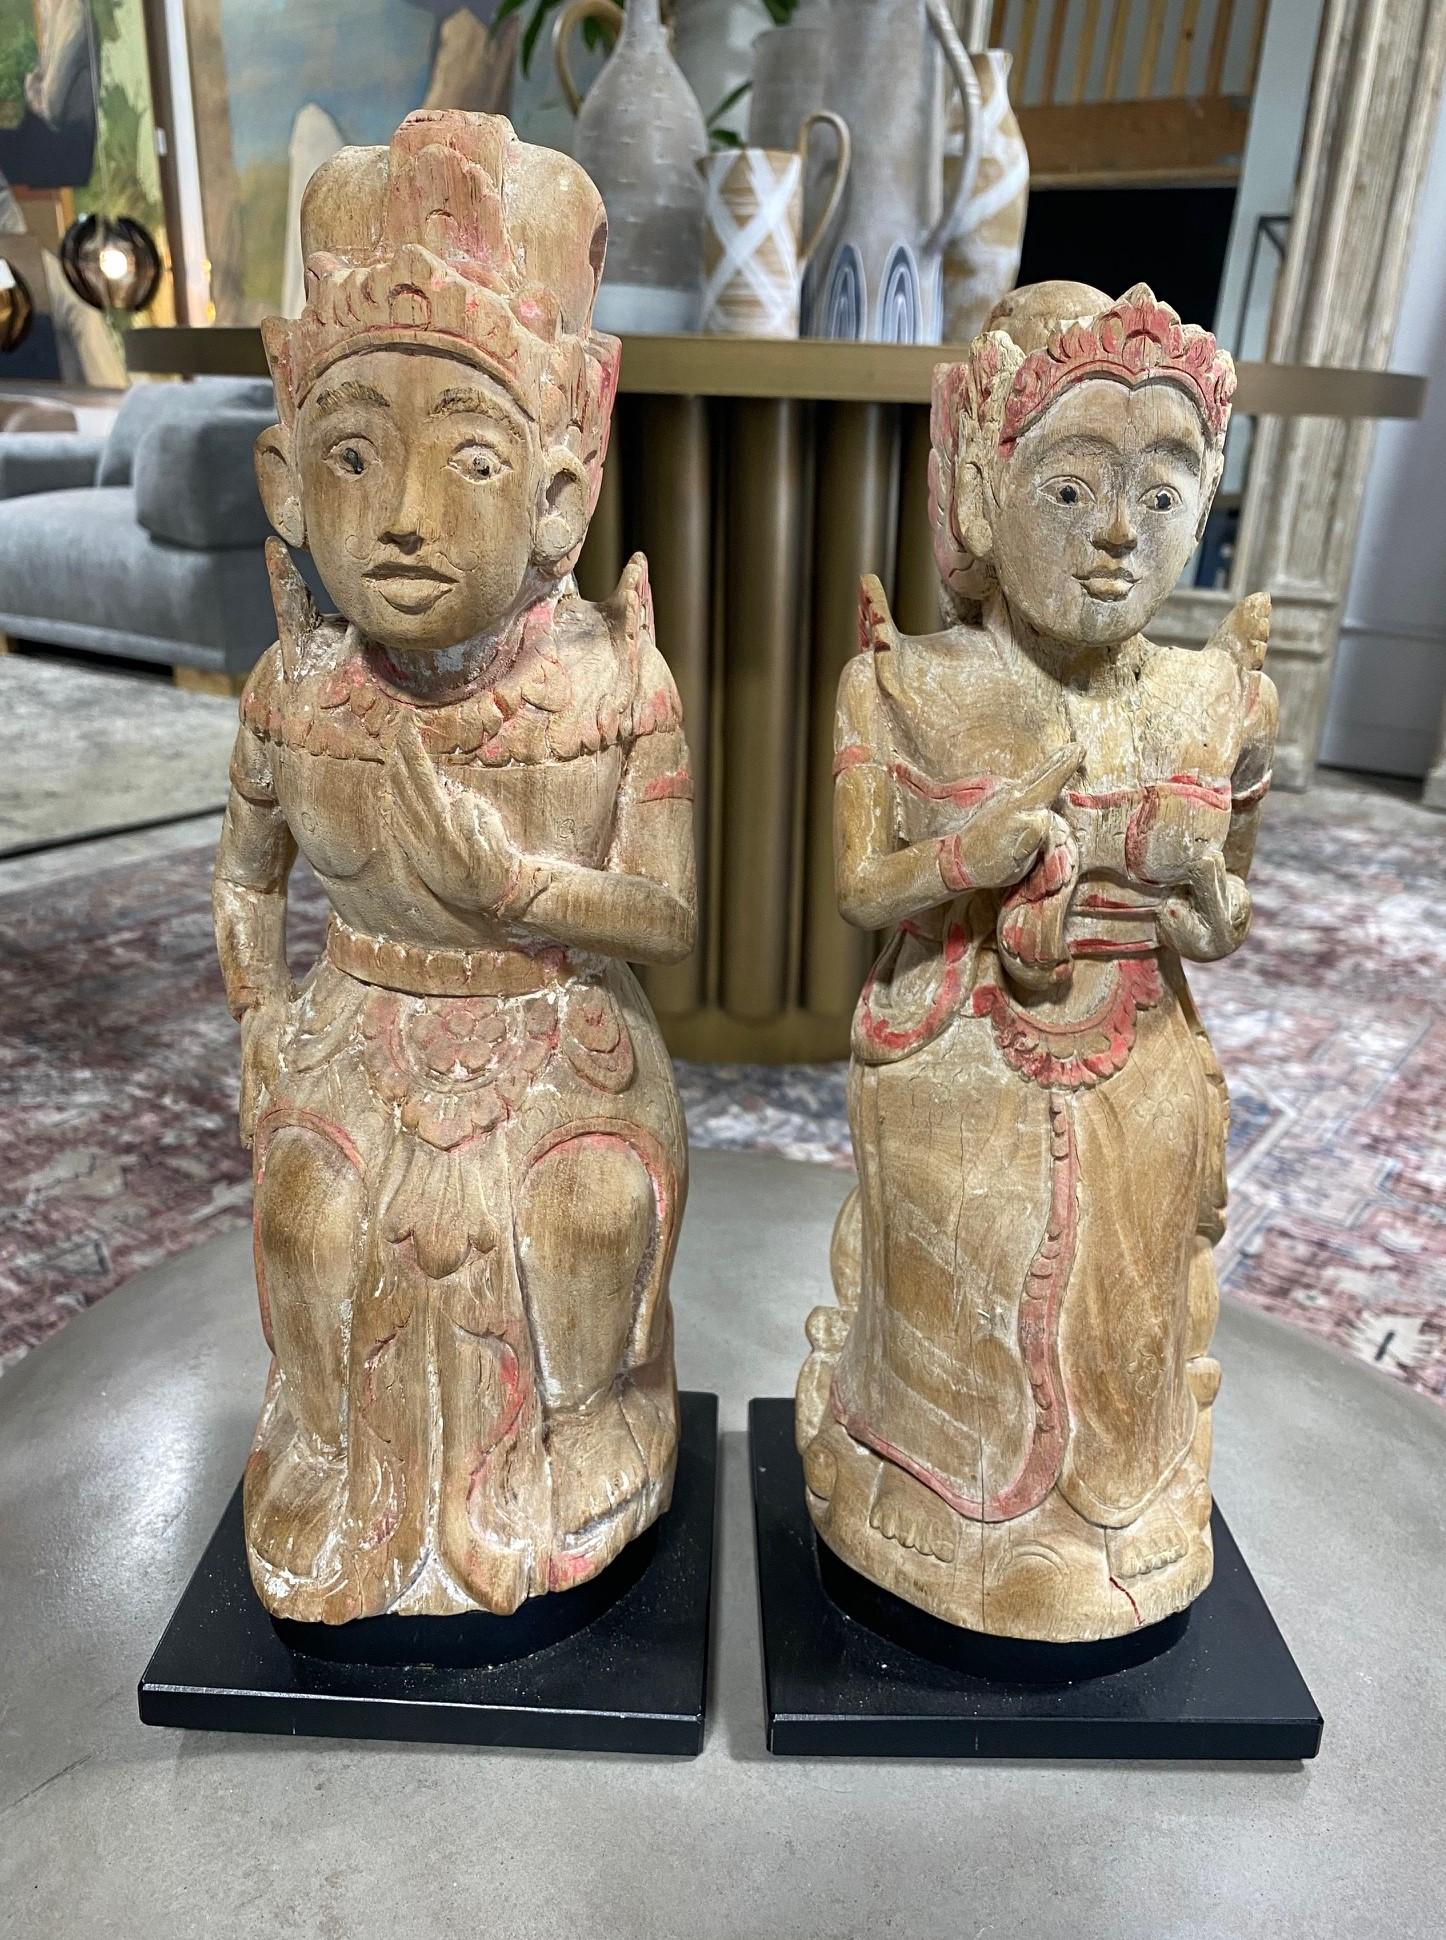 Wunderschönes, einzigartiges, handgeschnitztes und polychromes Paar indonesisch-balinesischer Andachtsfiguren/Statuen von der Insel Bali. 

Dieses Paar, das wahrscheinlich aus dem frühen bis mittleren 20. Jahrhundert stammt, hat eine schöne,